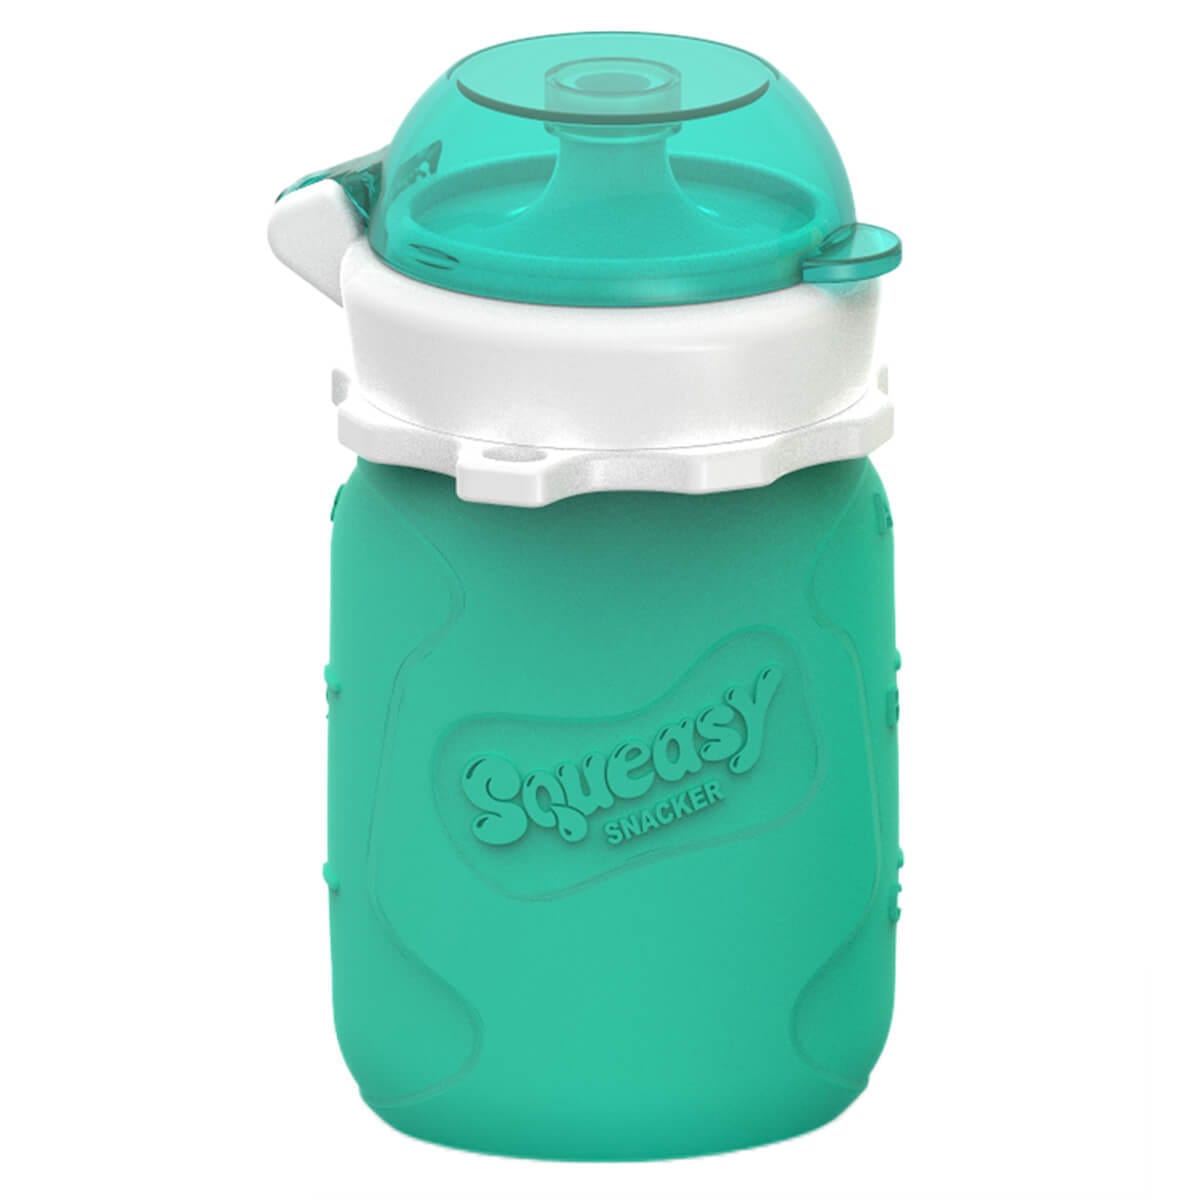 Squeasy Gear snack pouch Squeasy Gear Squeasy Snacker - Aqua 3.5 OZ